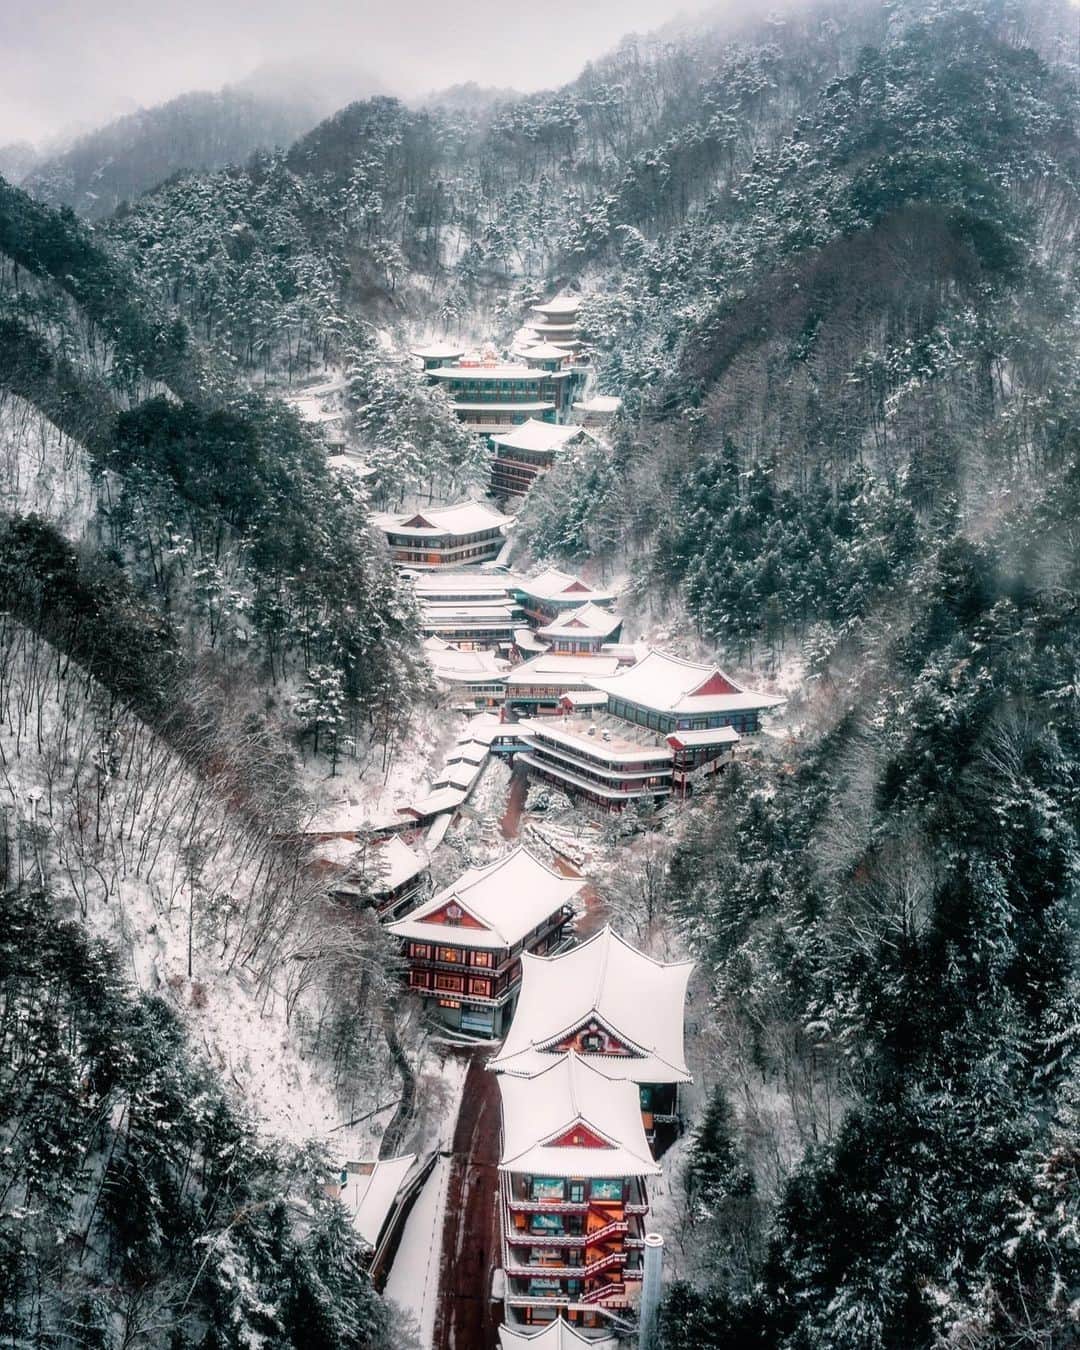 キャセイパシフィック航空のインスタグラム：「From skating ⛸ on frozen lakes to bathing in hot springs ♨, what do you love most about travelling in #winter? Perhaps hiking in snowy Sobaeksan🗻 in Danyang County, South Korea and admiring the beautifully snow-covered roofs of Guinsa nestled in its valleys.⠀ ⠀ #冬季 出遊，你喜歡湖上滑冰⛸ ，還是溫泉之旅？在南韓丹陽郡小白山🗻 上可以一邊行山，一邊欣賞山谷中白皚皚的雪景。⠀ ⠀ 📸: @namchosun_landscapes⠀ ⠀ #cathaypacific #MoveBeyond #southkorea #sobaeksan #danyancounty⠀」